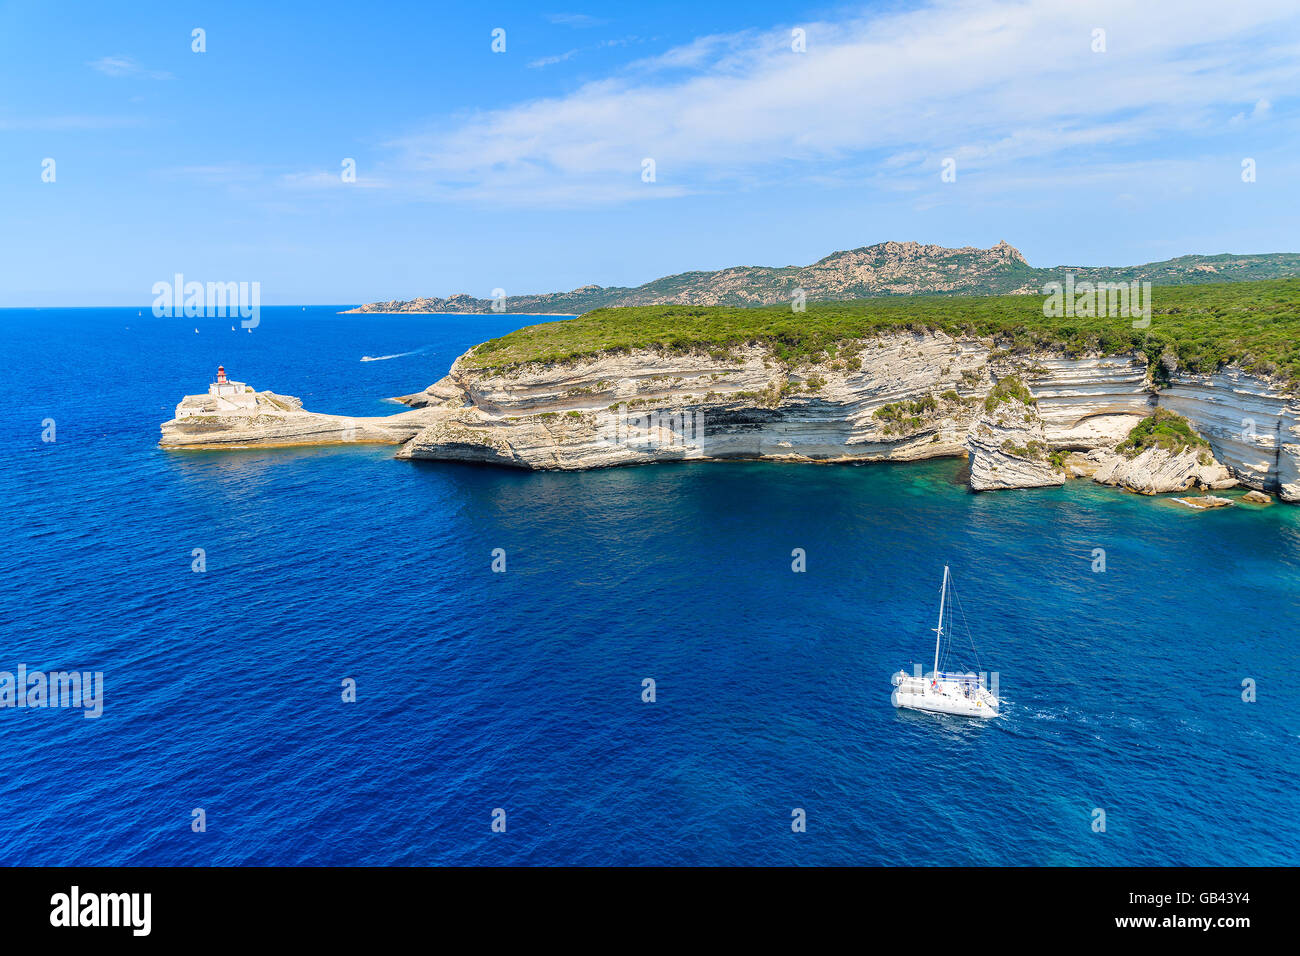 Un bianco catamarano a vela sul mare blu acqua lungo la costa della Corsica, Francia Foto Stock